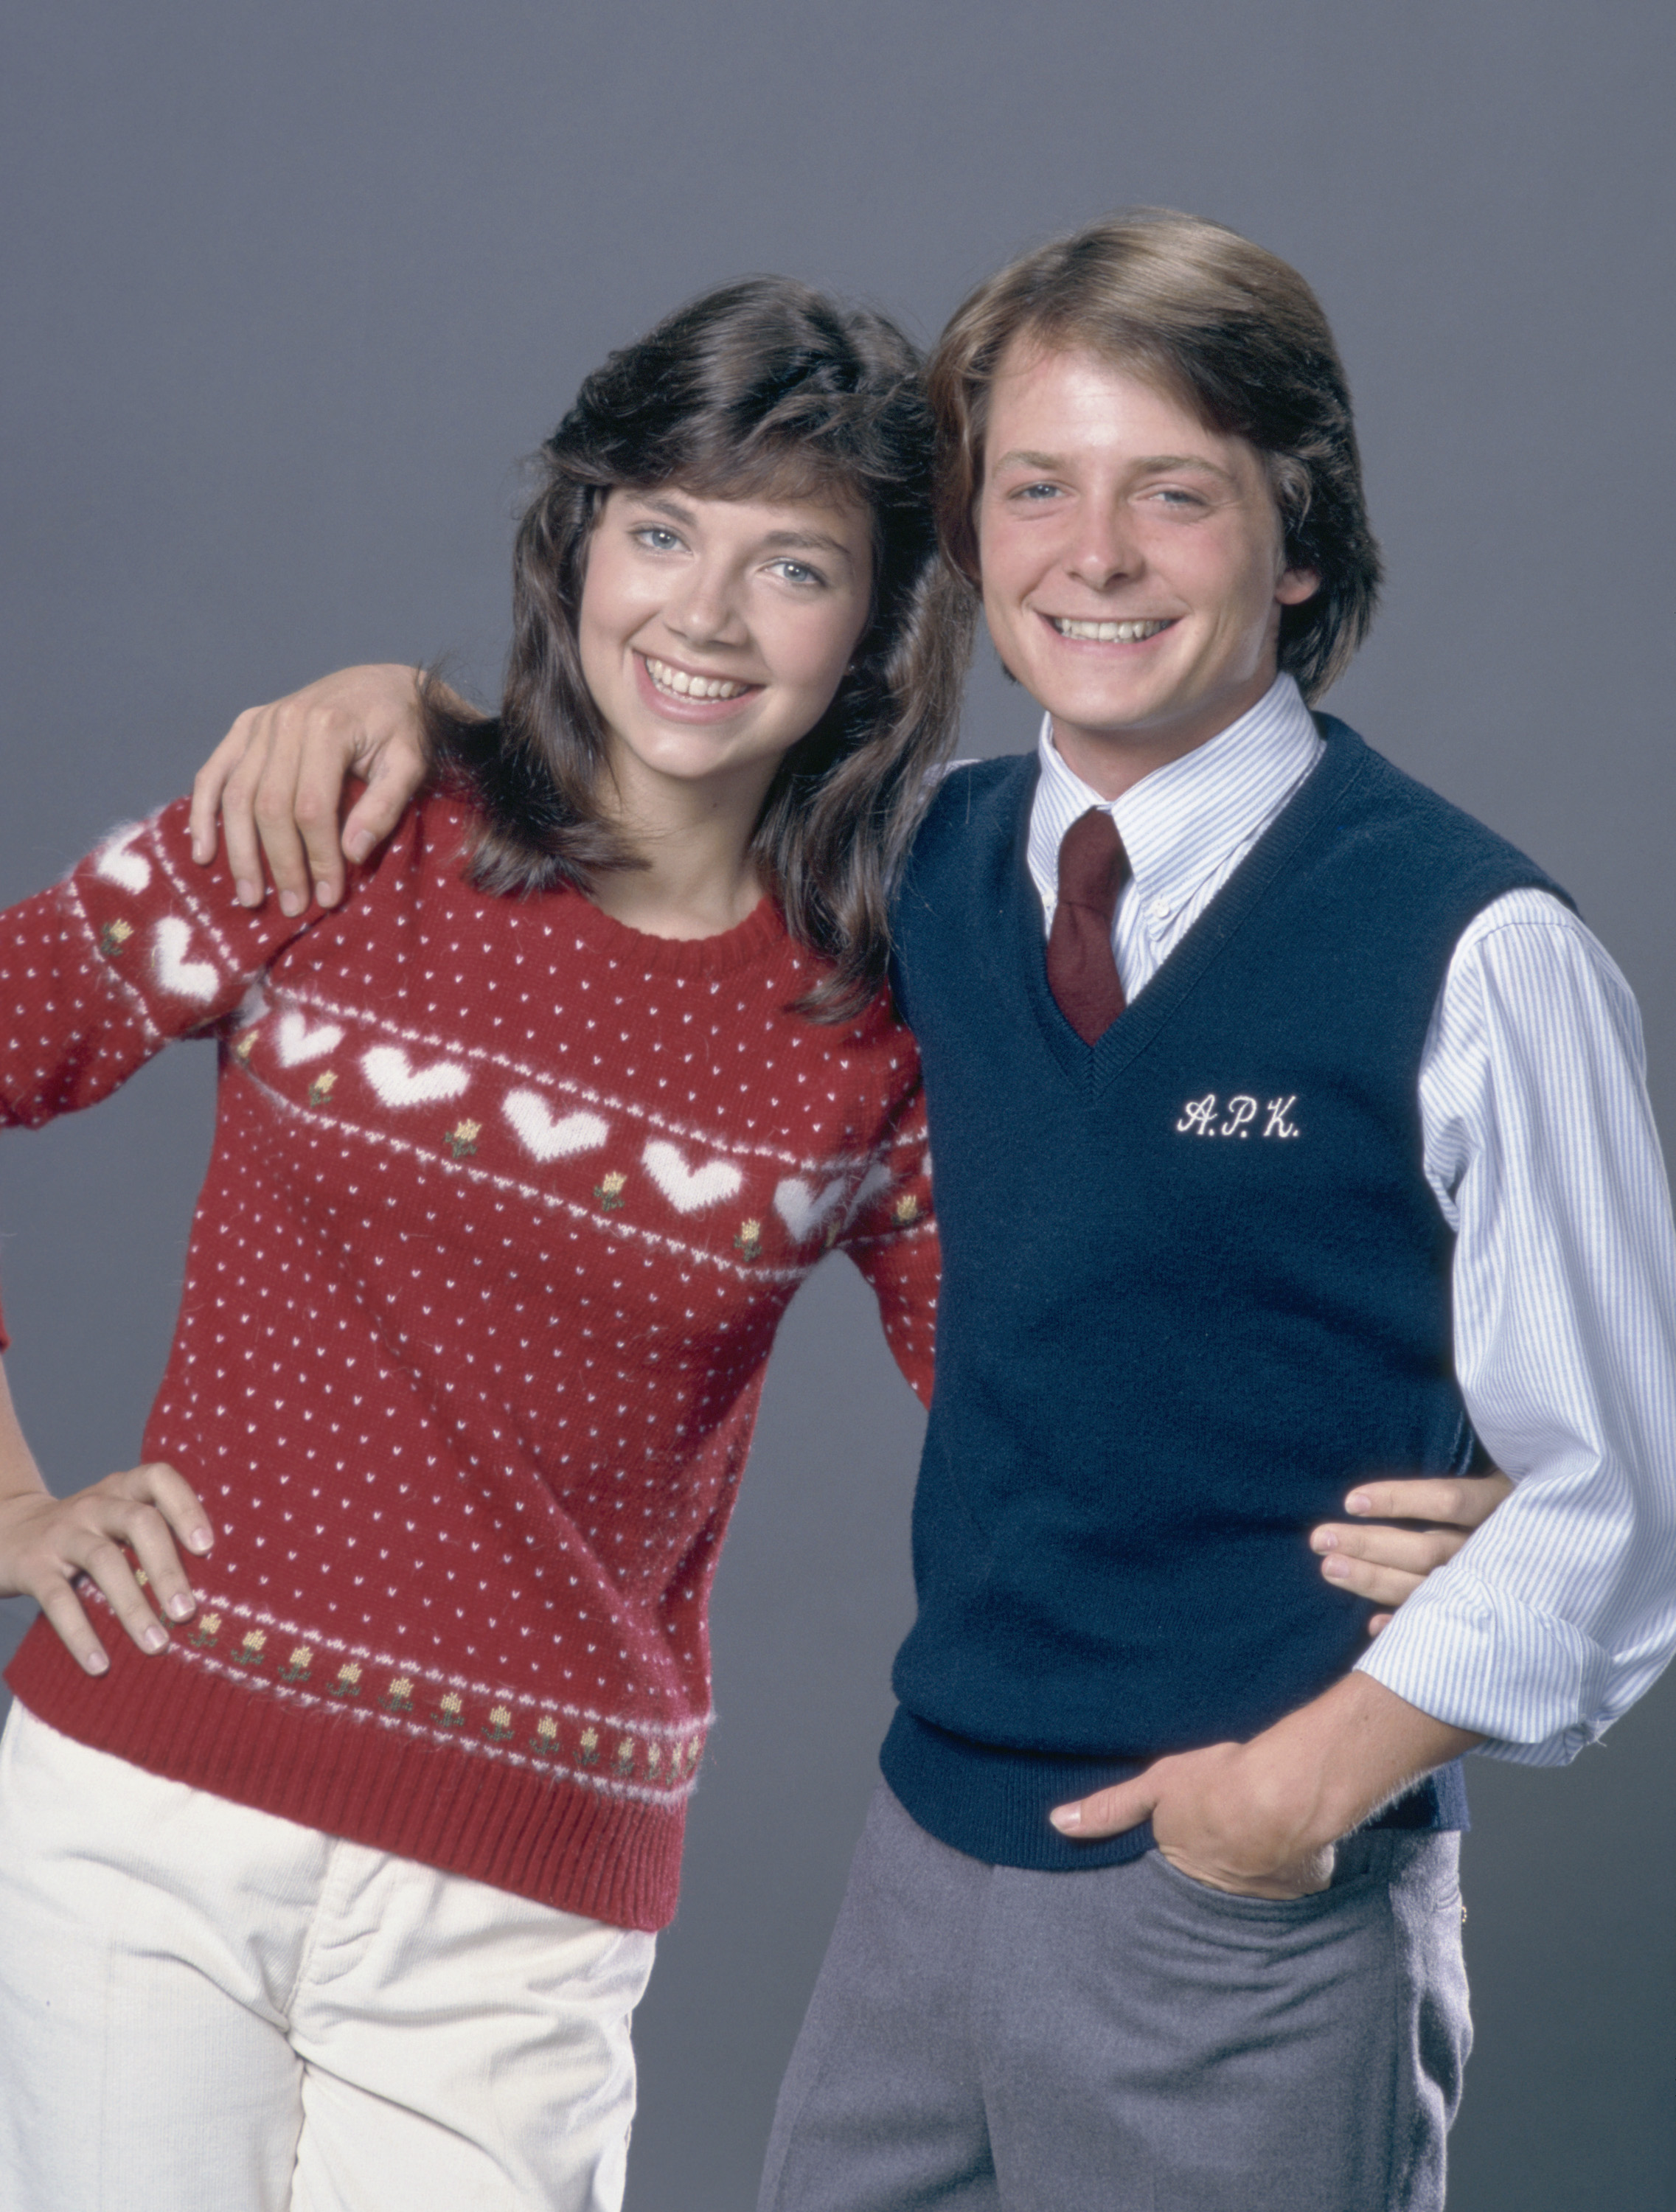 Justine Bateman y Michael J. Fox en "Family Ties", hacia los años 80 | Foto: Getty Images